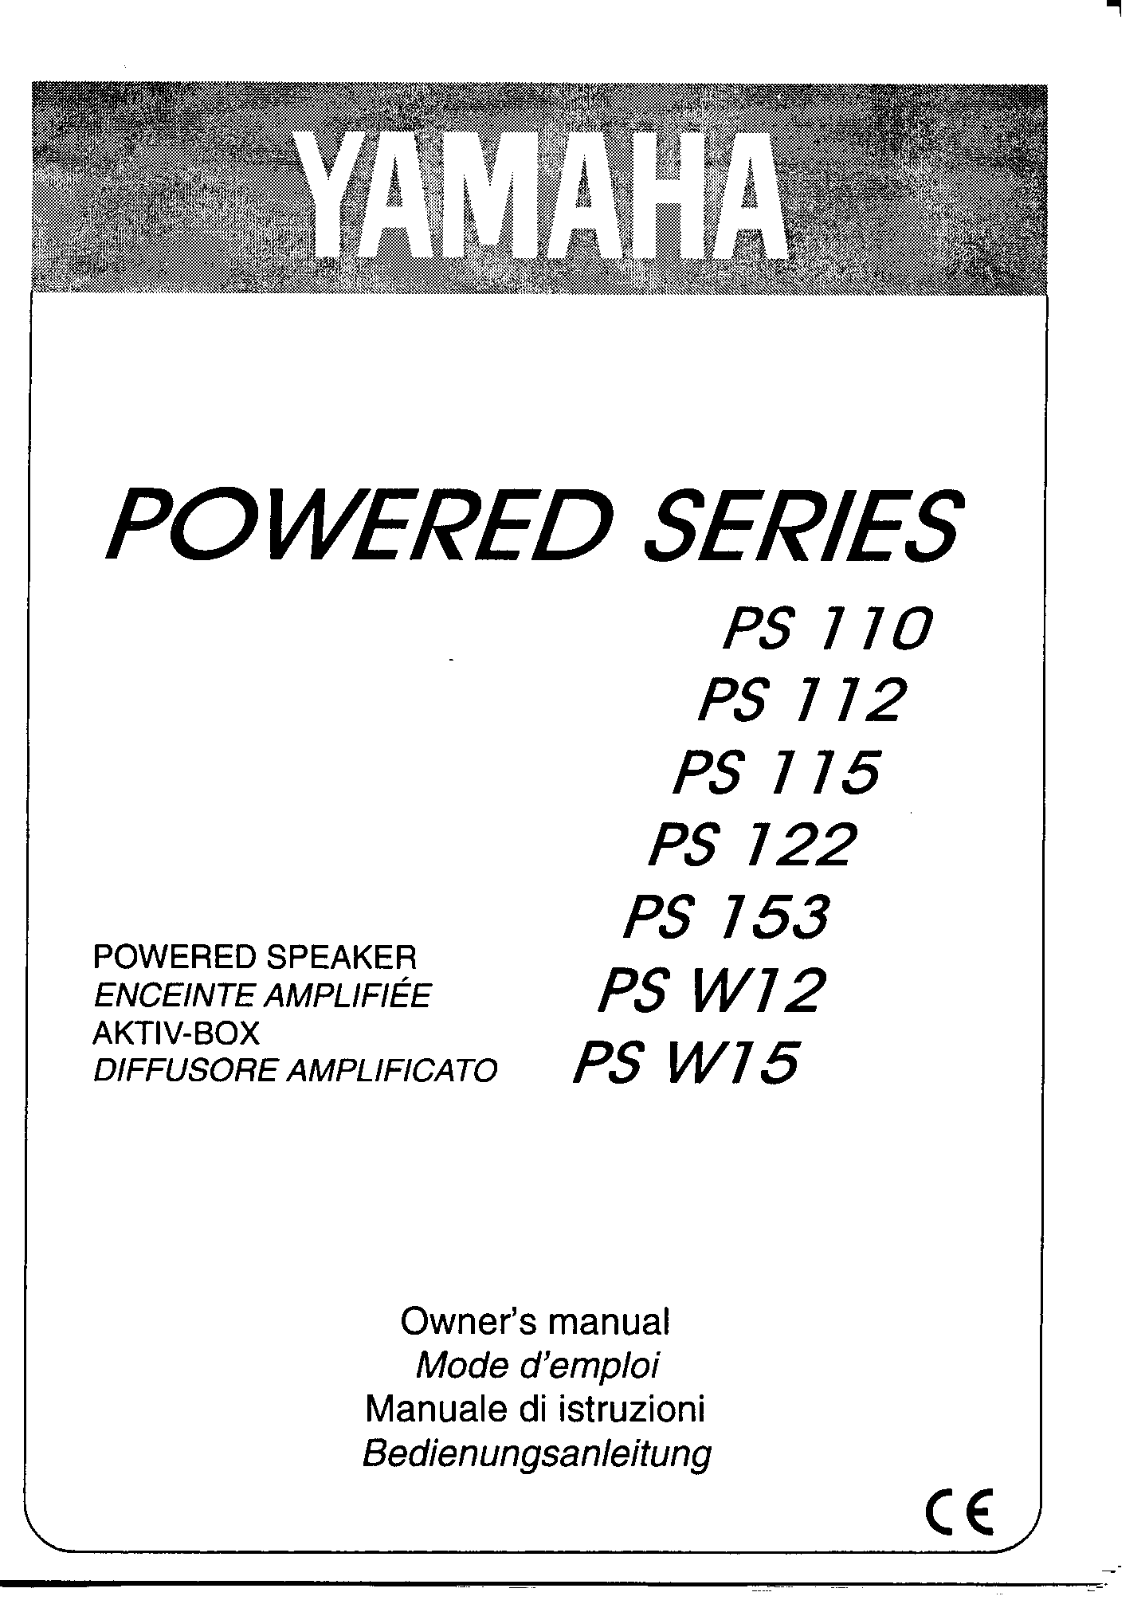 Yamaha PS 153, PS 115, PS W15, PS W12, PS 122 User Manual